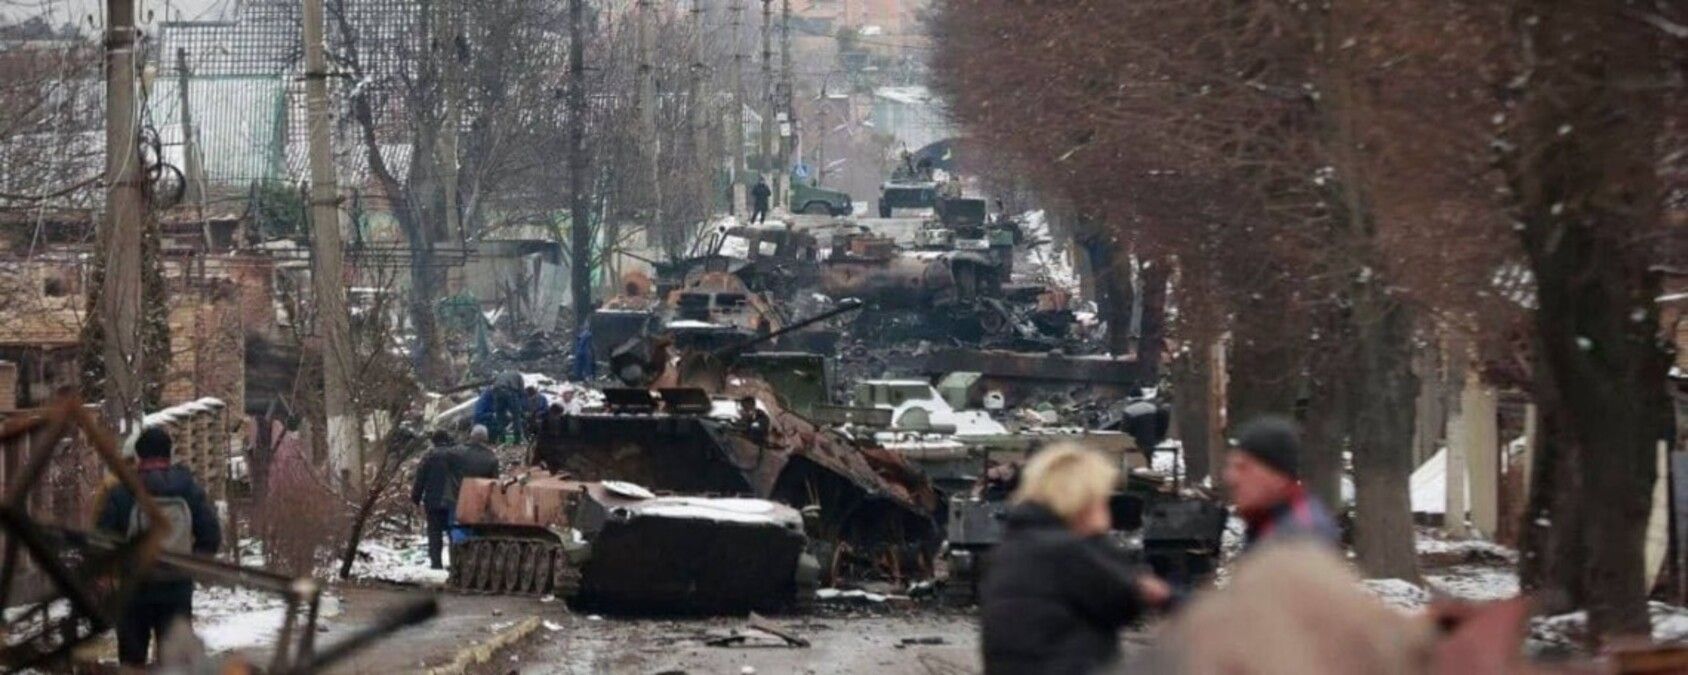 Стало известно, какие планы у оккупантов относительно Донбасса